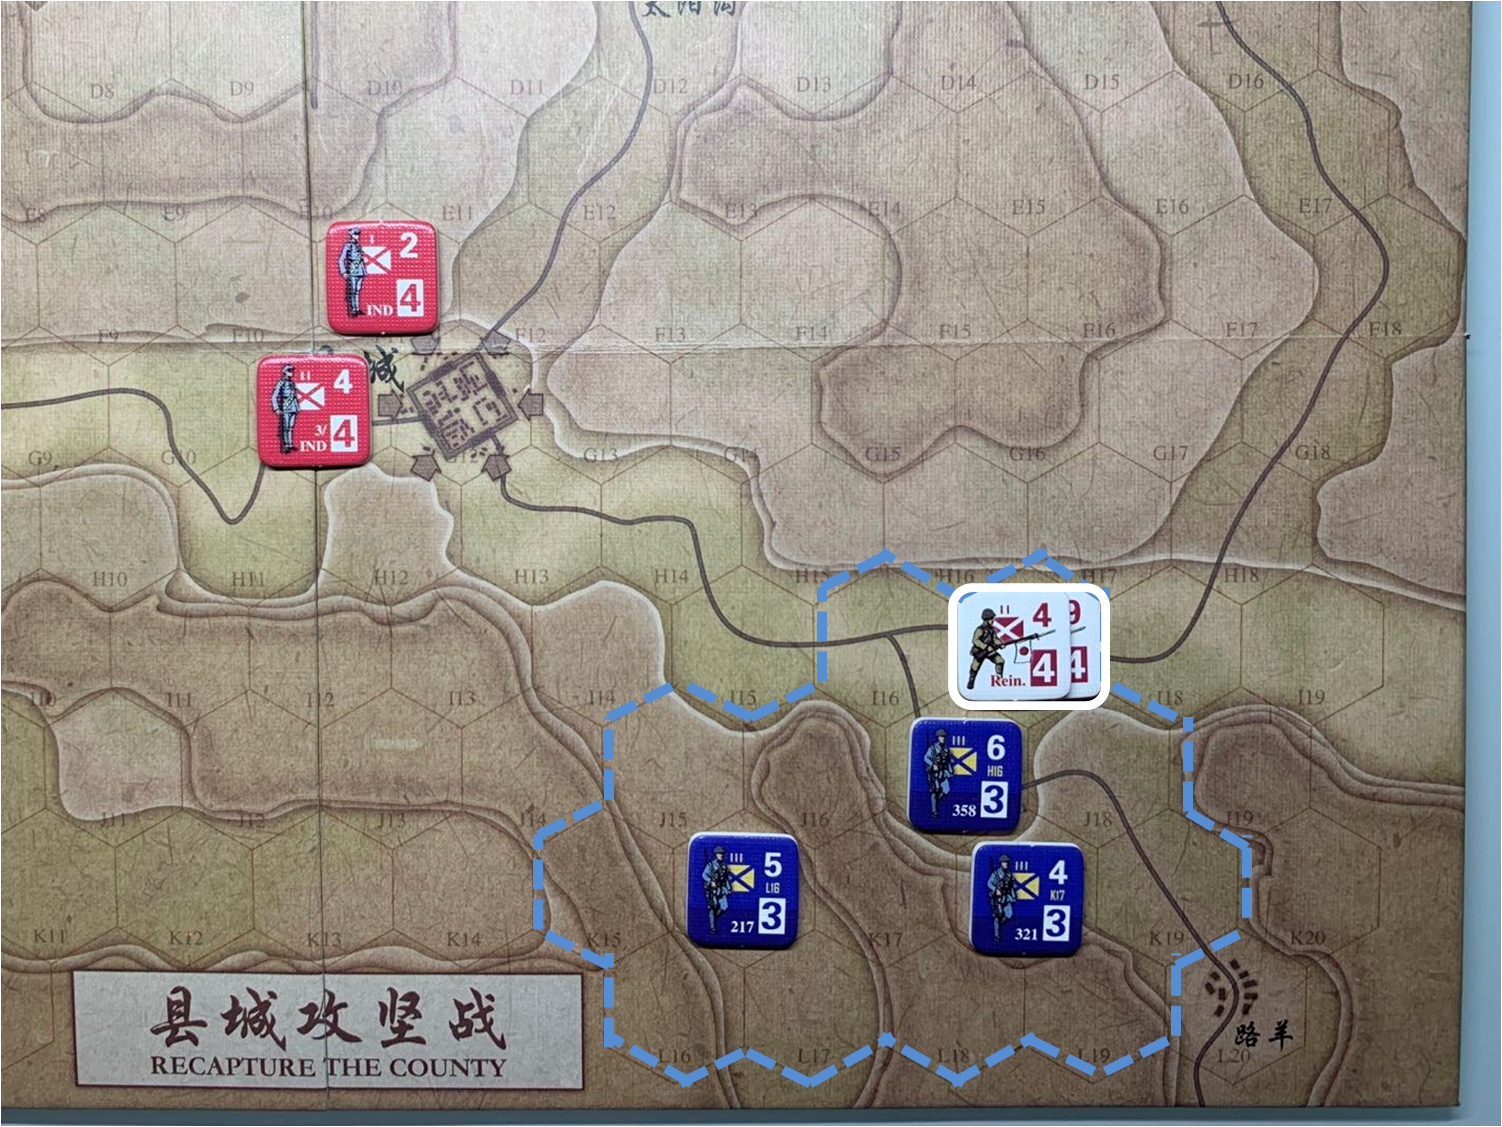 第二回合路羊方向日軍增援部隊（I17）對於移動命令3的執行結果